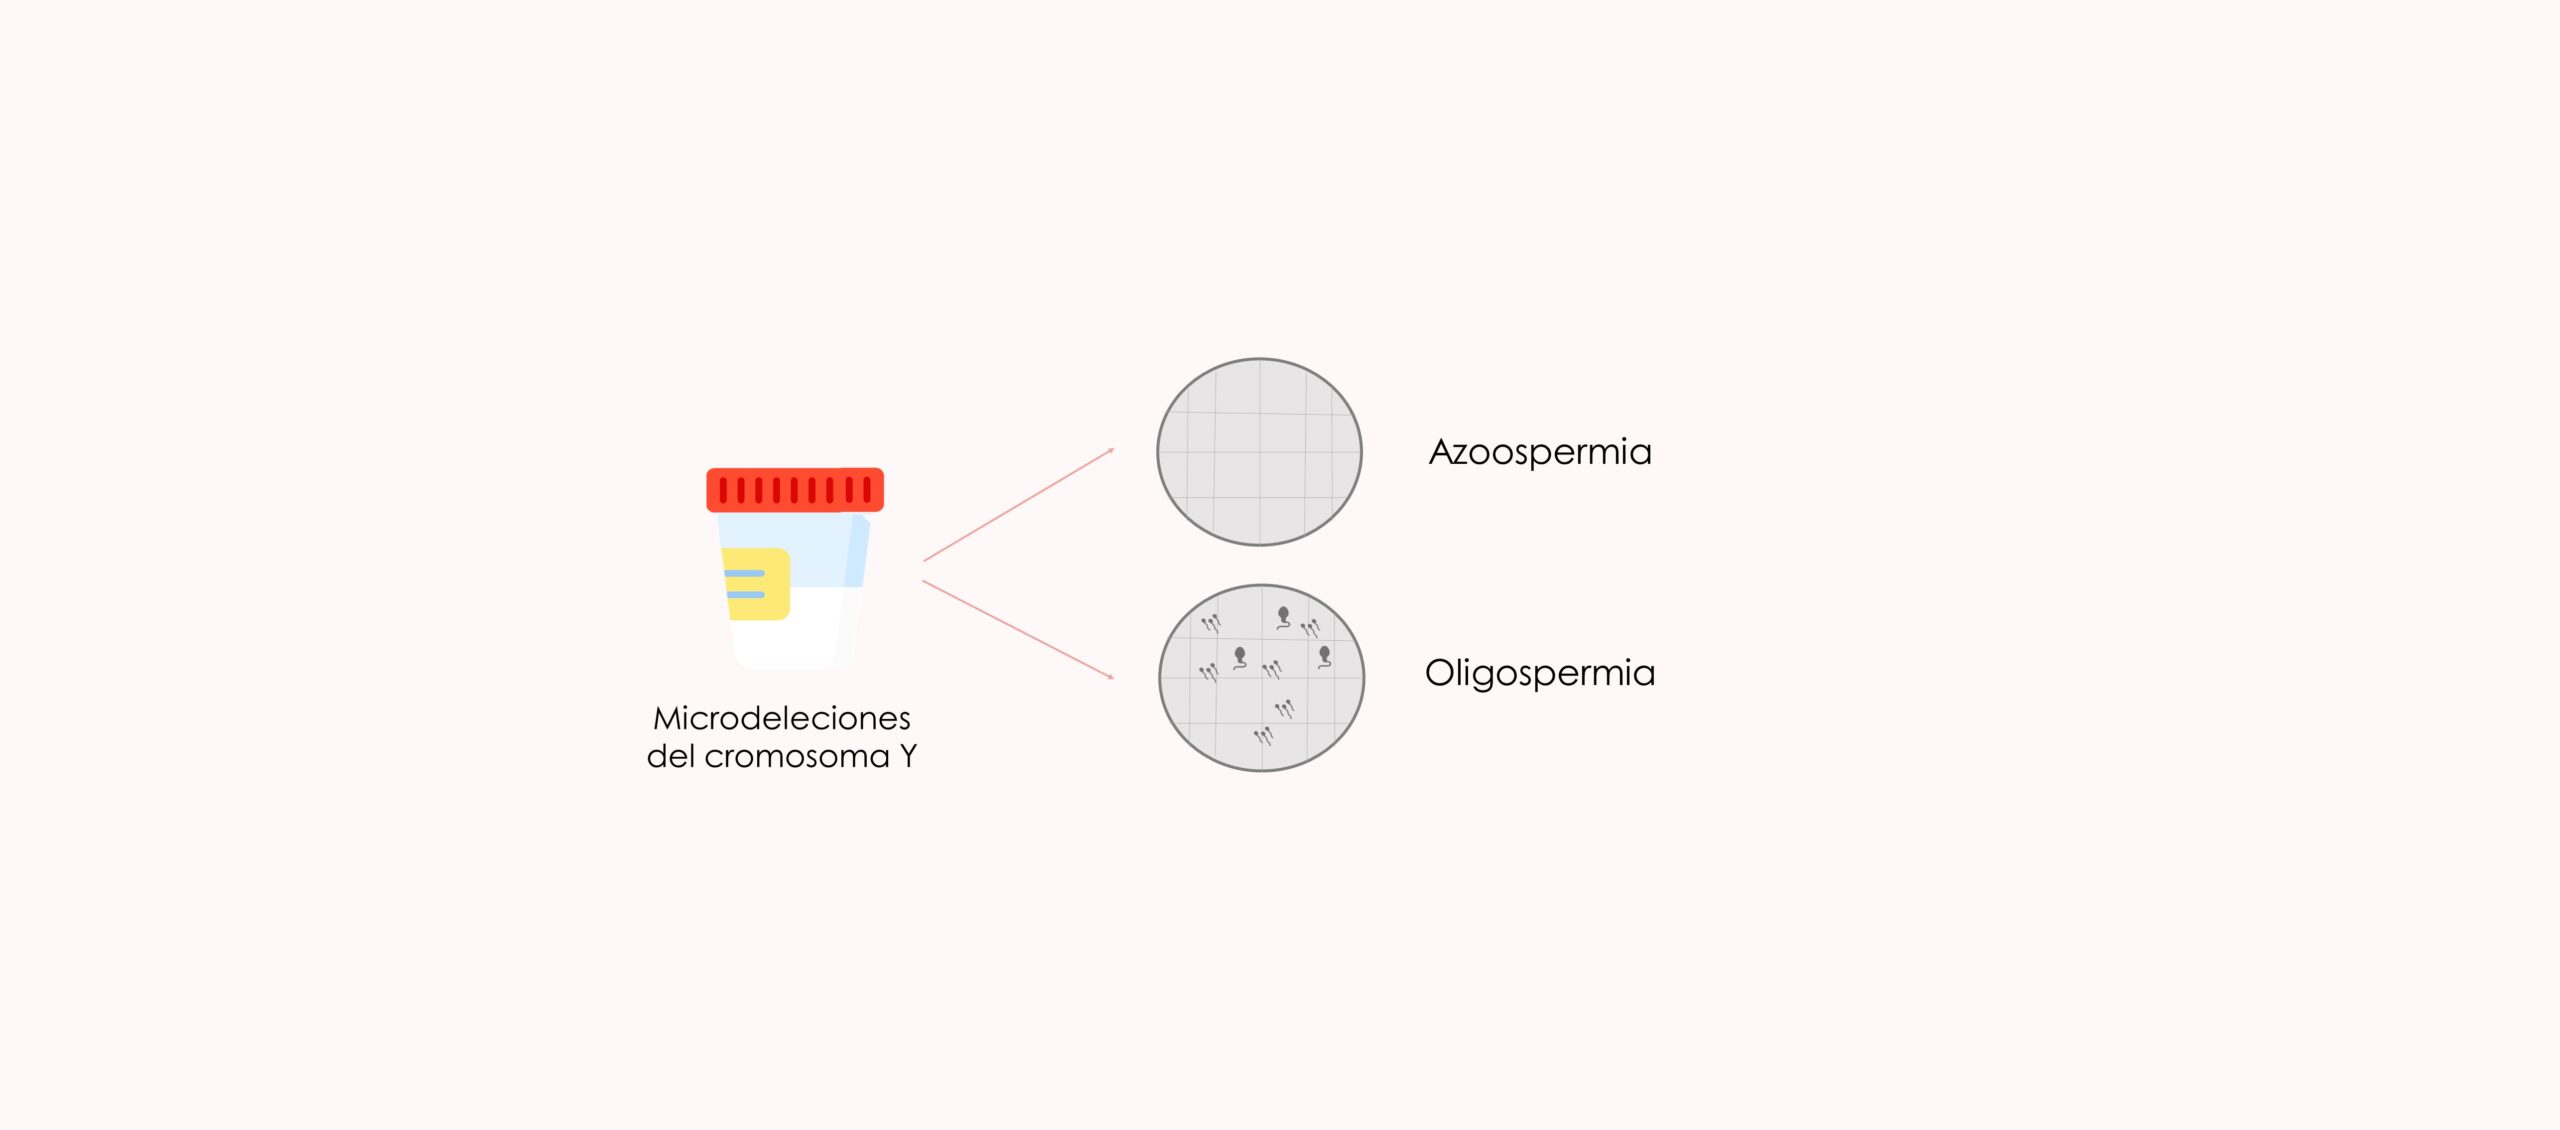 ¿Cómo se diagnostican las microdeleciones en en cromosoma Y?